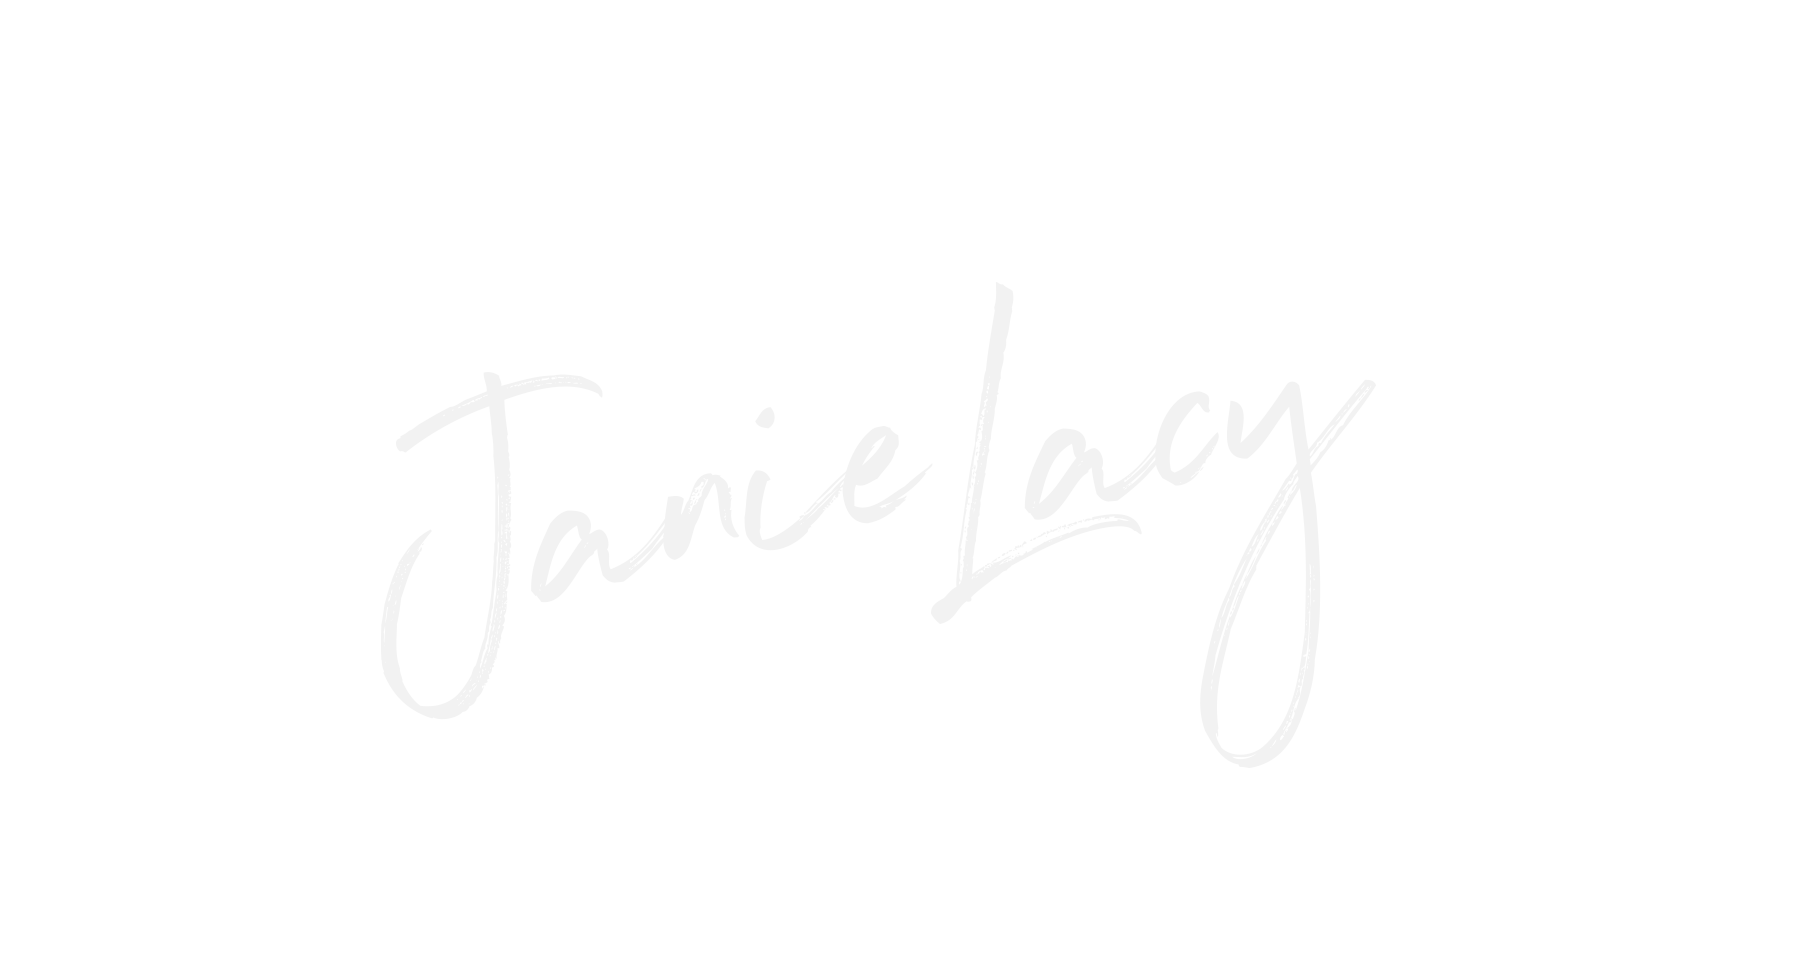 Janie Lacy